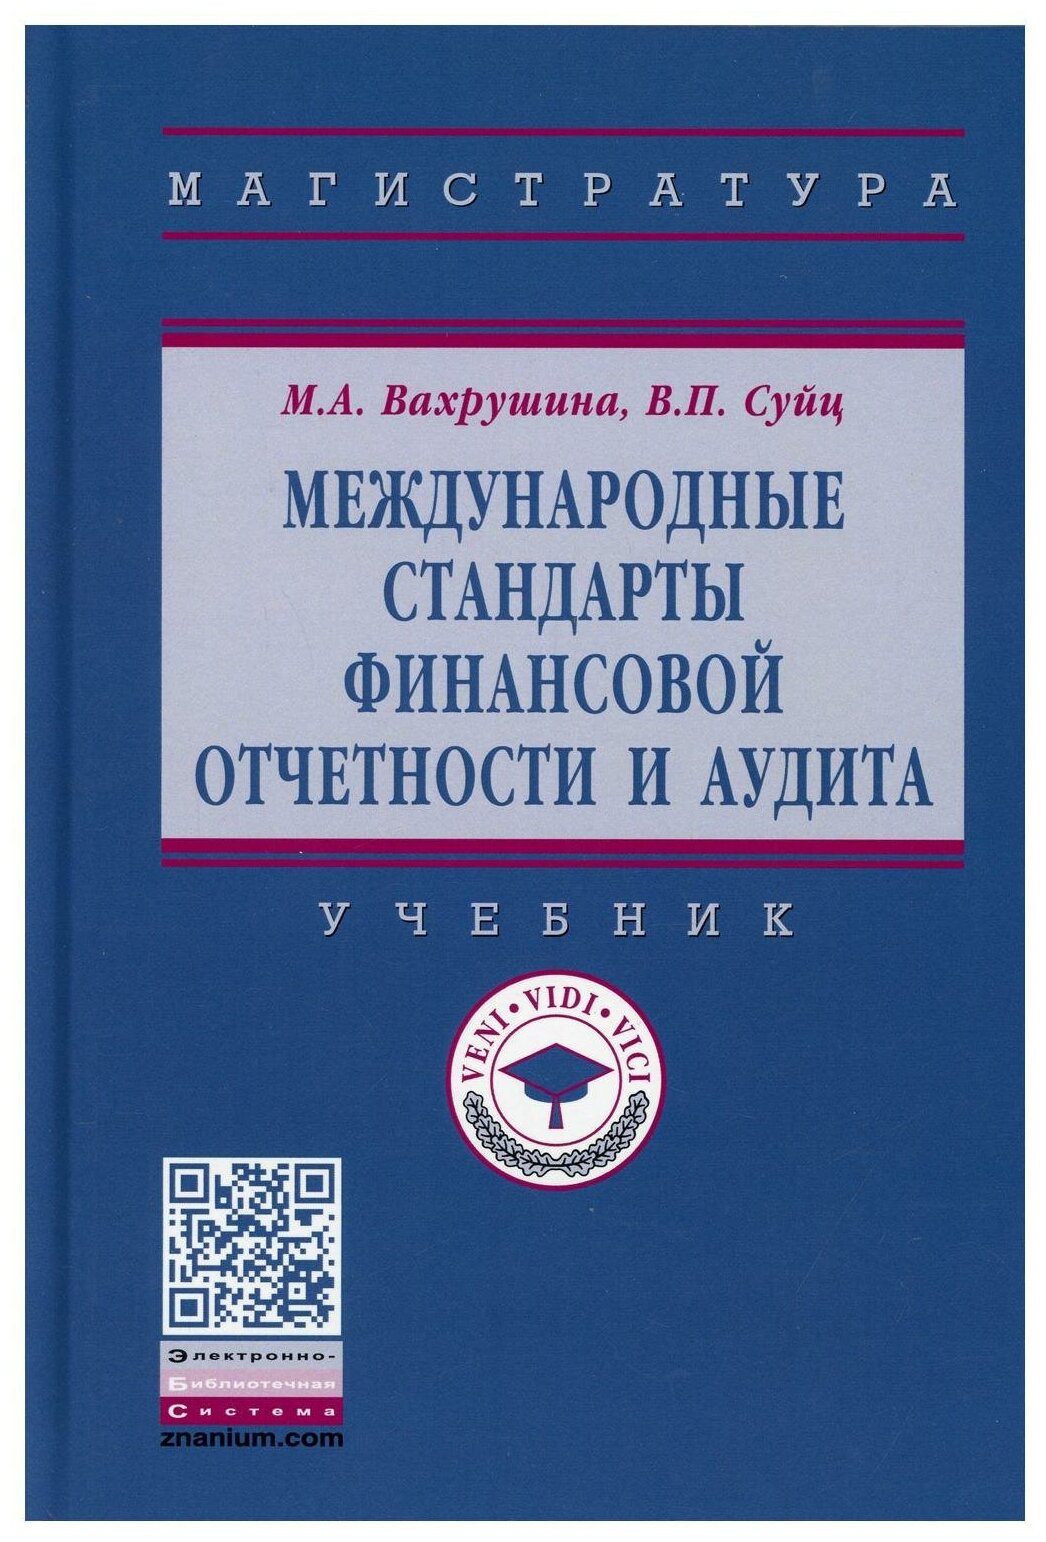 Международные стандарты финансовой отчетности и аудита Учебник - фото №1